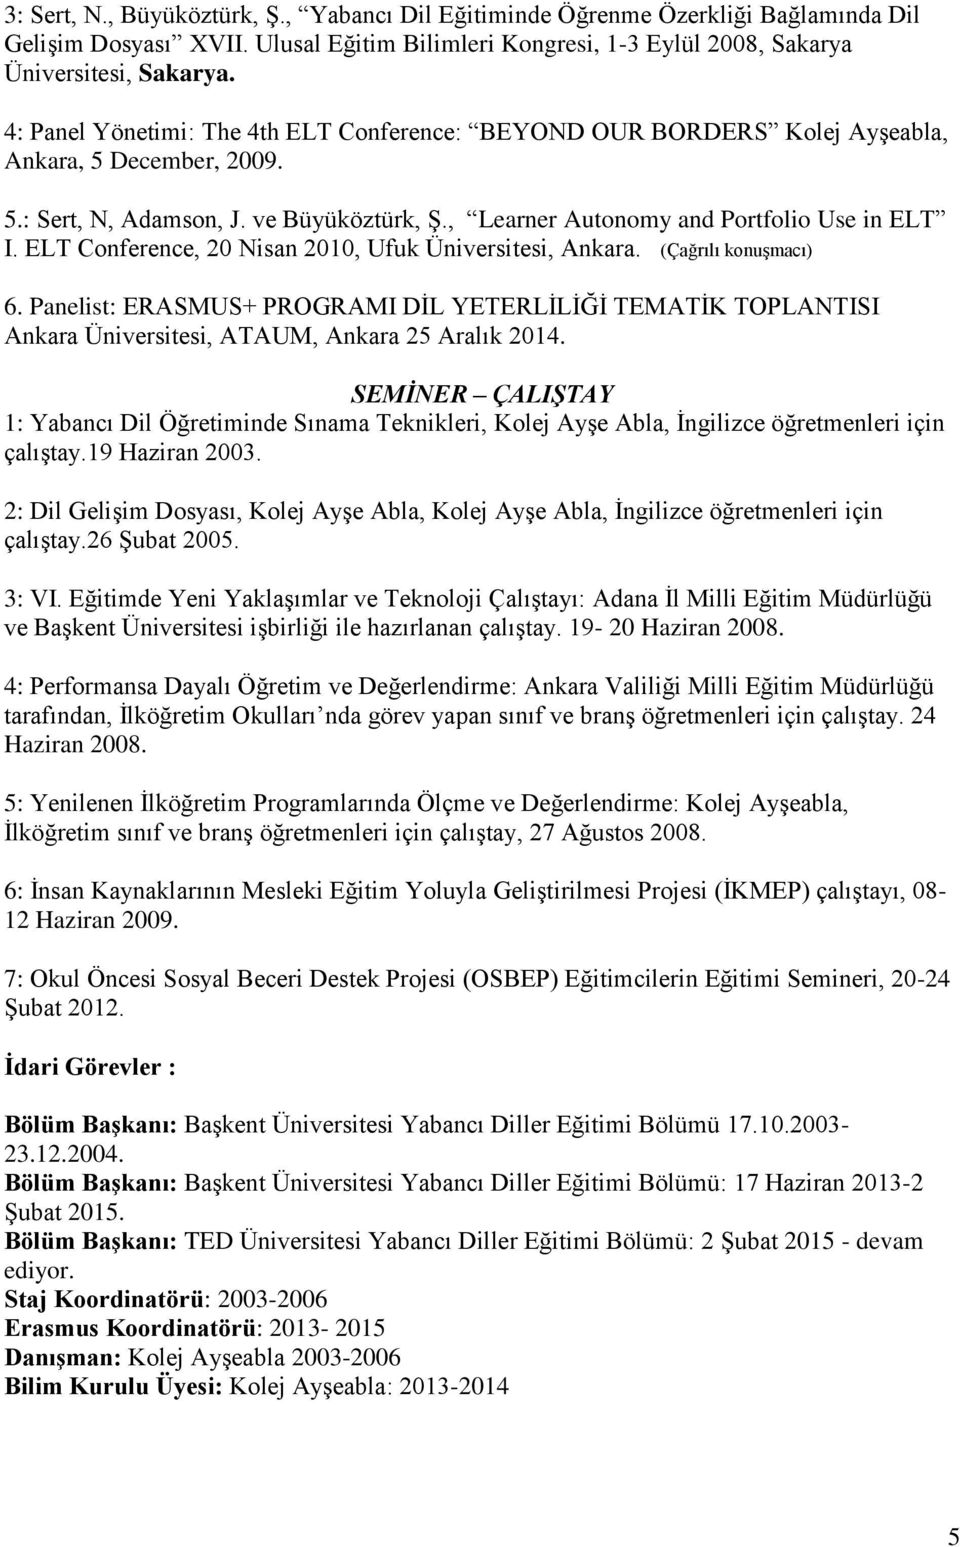 ELT Conference, 20 Nisan 2010, Ufuk Üniversitesi, Ankara. (Çağrılı konuşmacı) 6. Panelist: ERASMUS+ PROGRAMI DİL YETERLİLİĞİ TEMATİK TOPLANTISI Ankara Üniversitesi, ATAUM, Ankara 25 Aralık 2014.